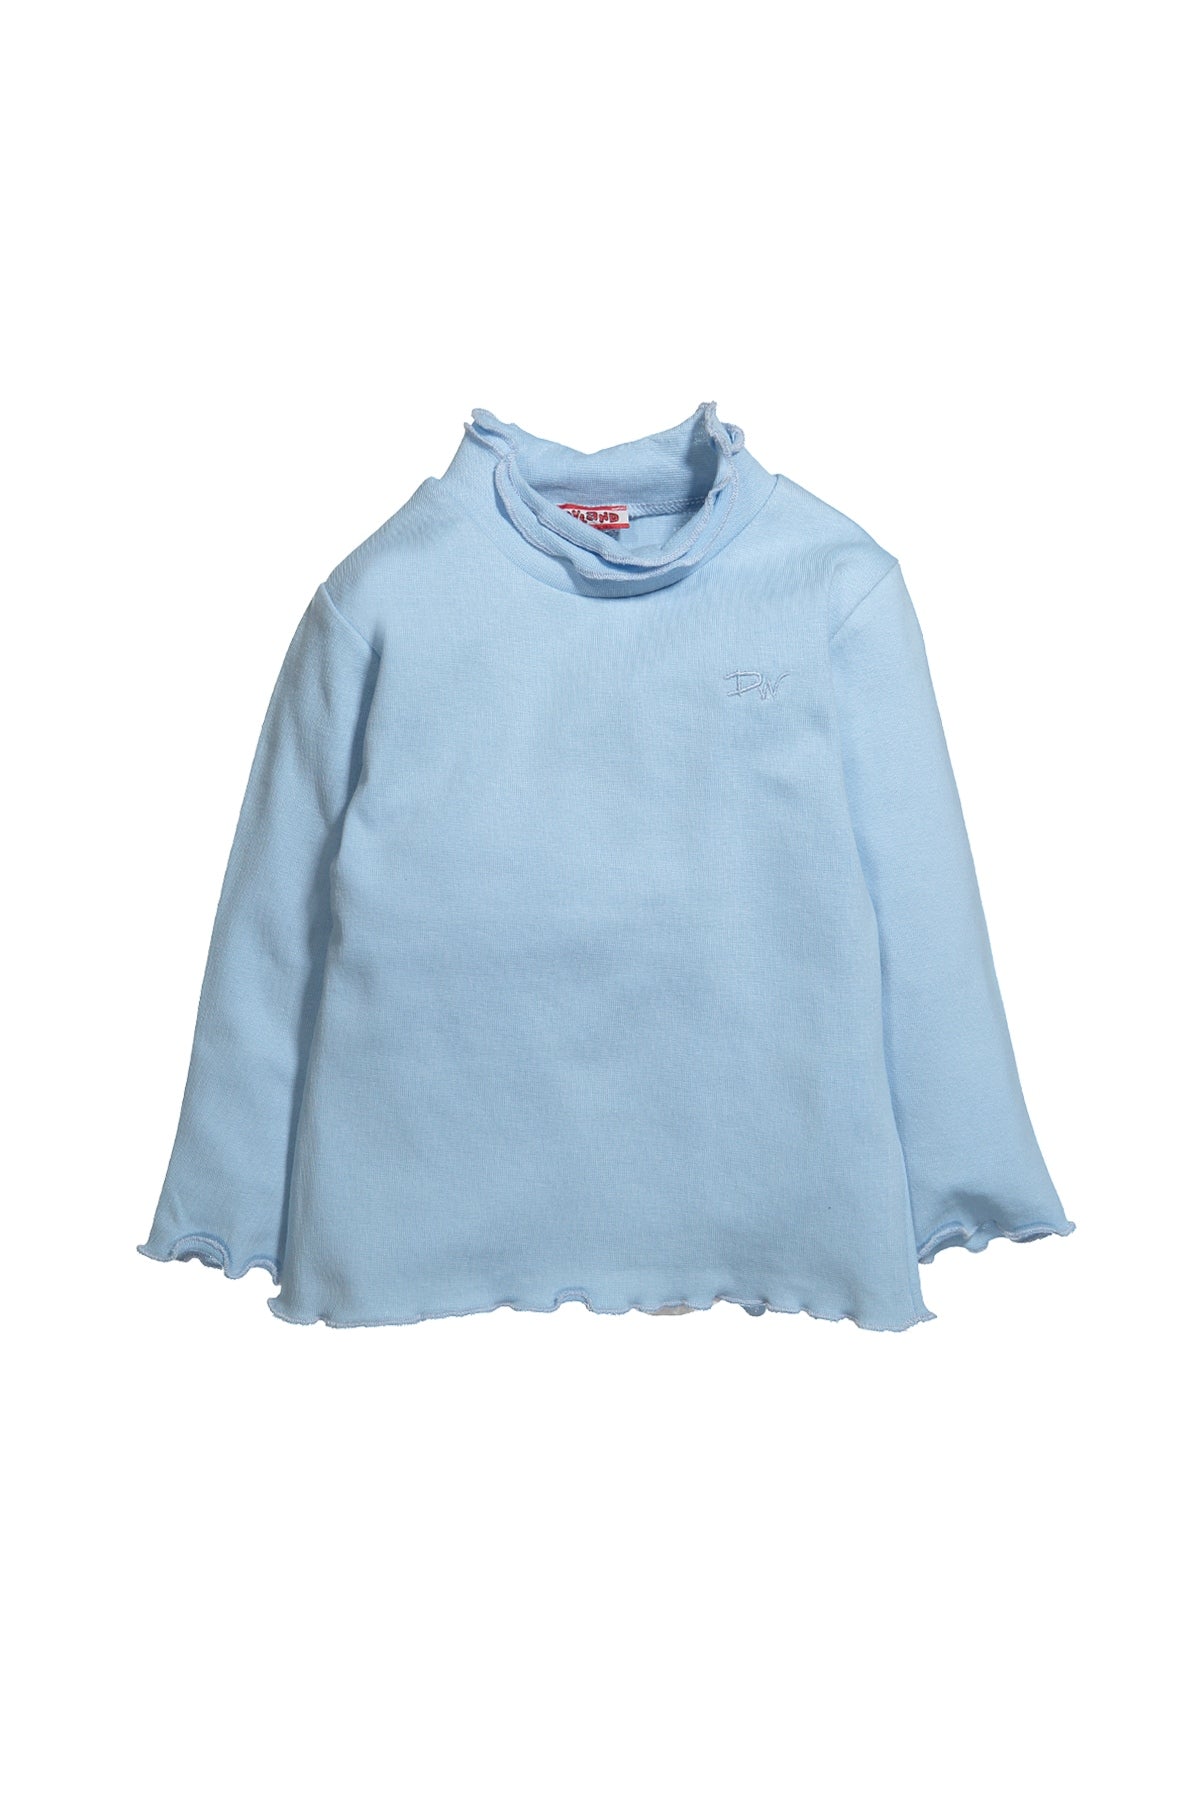 Kız Bebek Balıkçı Yaka Fırfırlı Uzun Kollu T-Shirt (6ay-12yaş)-0